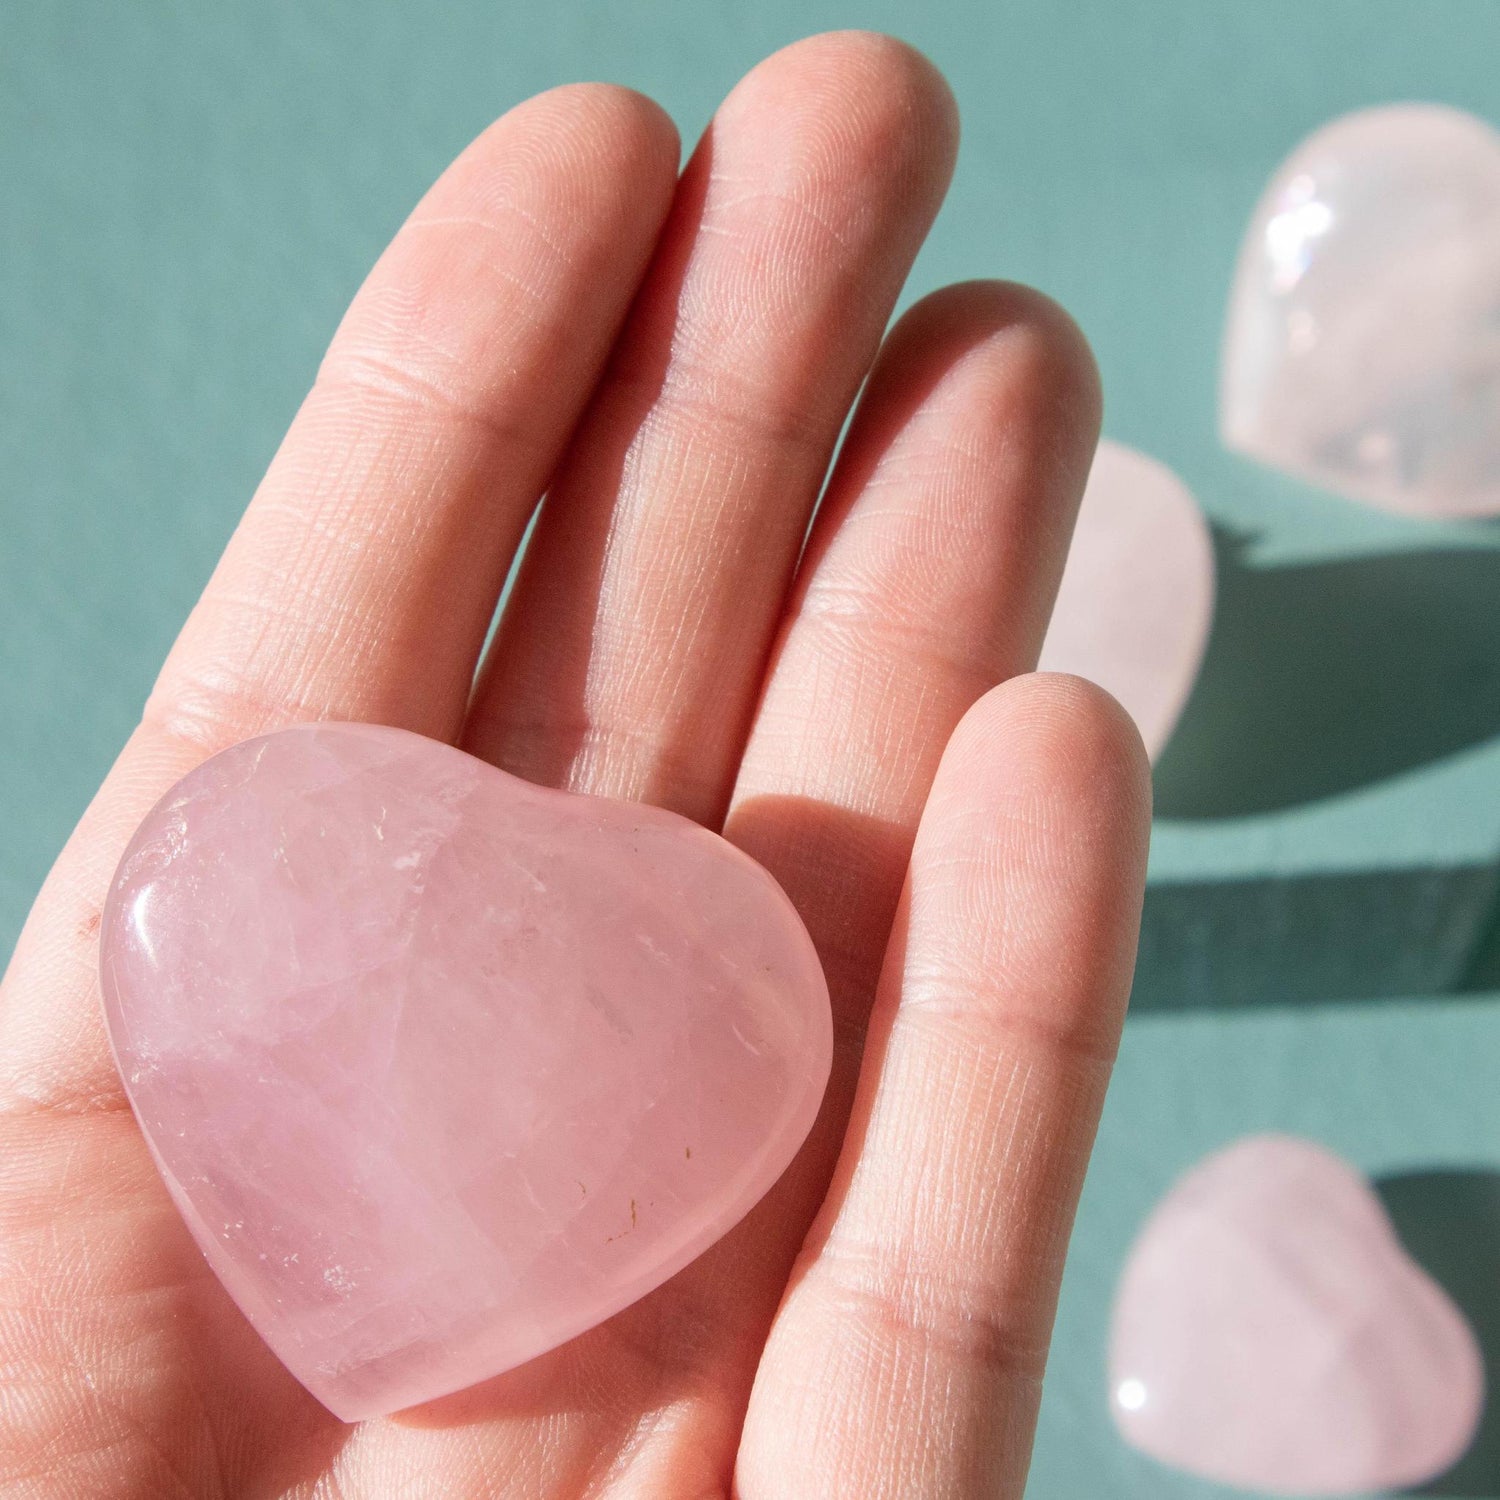 rose quartz, rose quartz crystal, rose quartz heart, rose quartz crystal heart, rose quartz metaphysical properties, rose quartz meaning